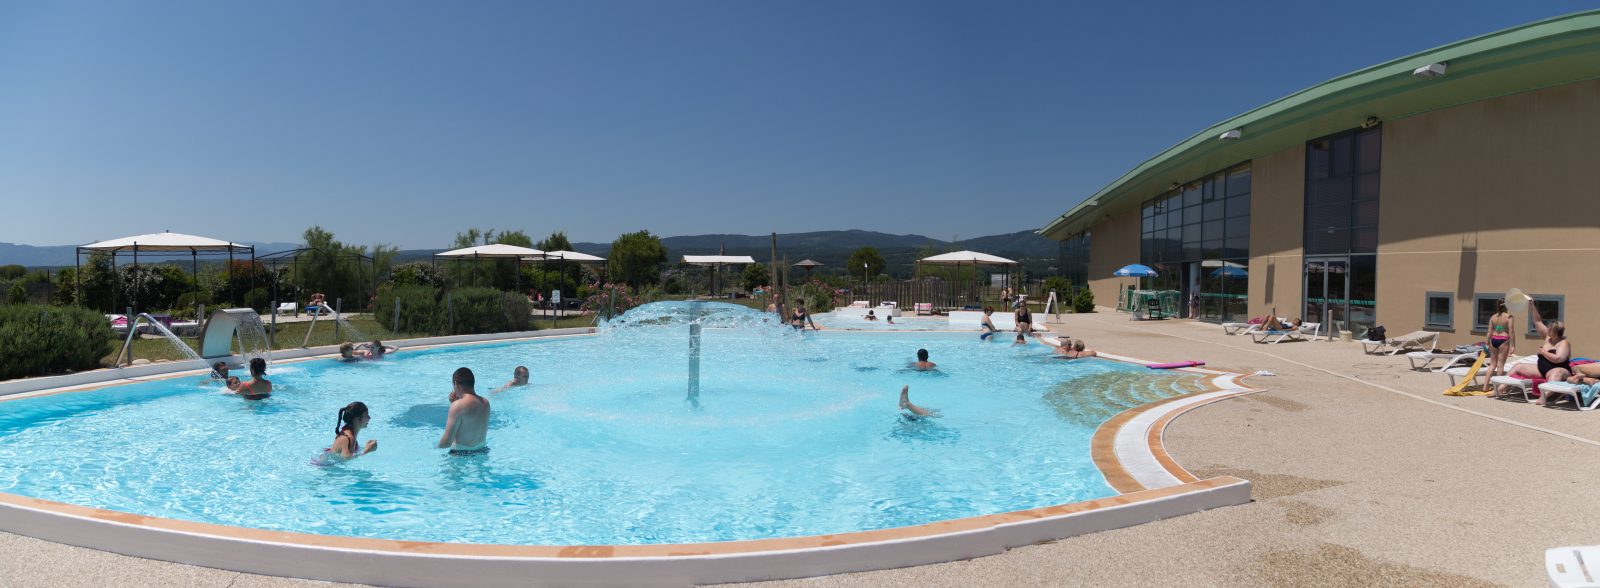 Piscine Intercommunale - Complexe aquatique la Perle d'eau à Lablachère -  EQUIPEMENT - Office de Tourisme Cévennes d'Ardèche